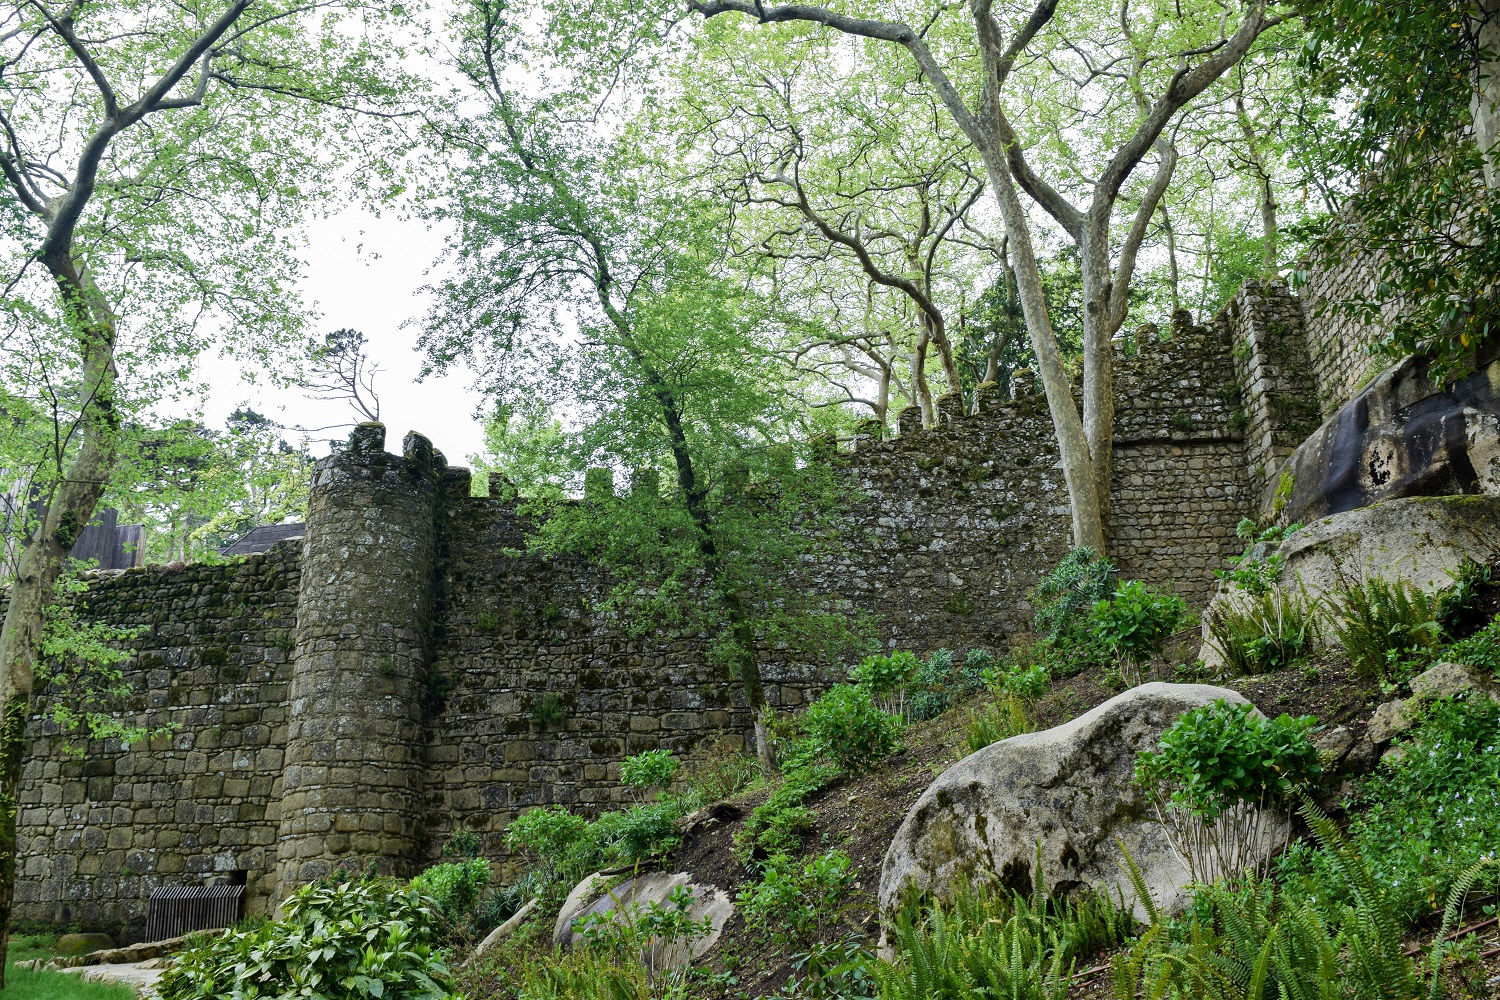 Walls of the Castelo dos Mouros